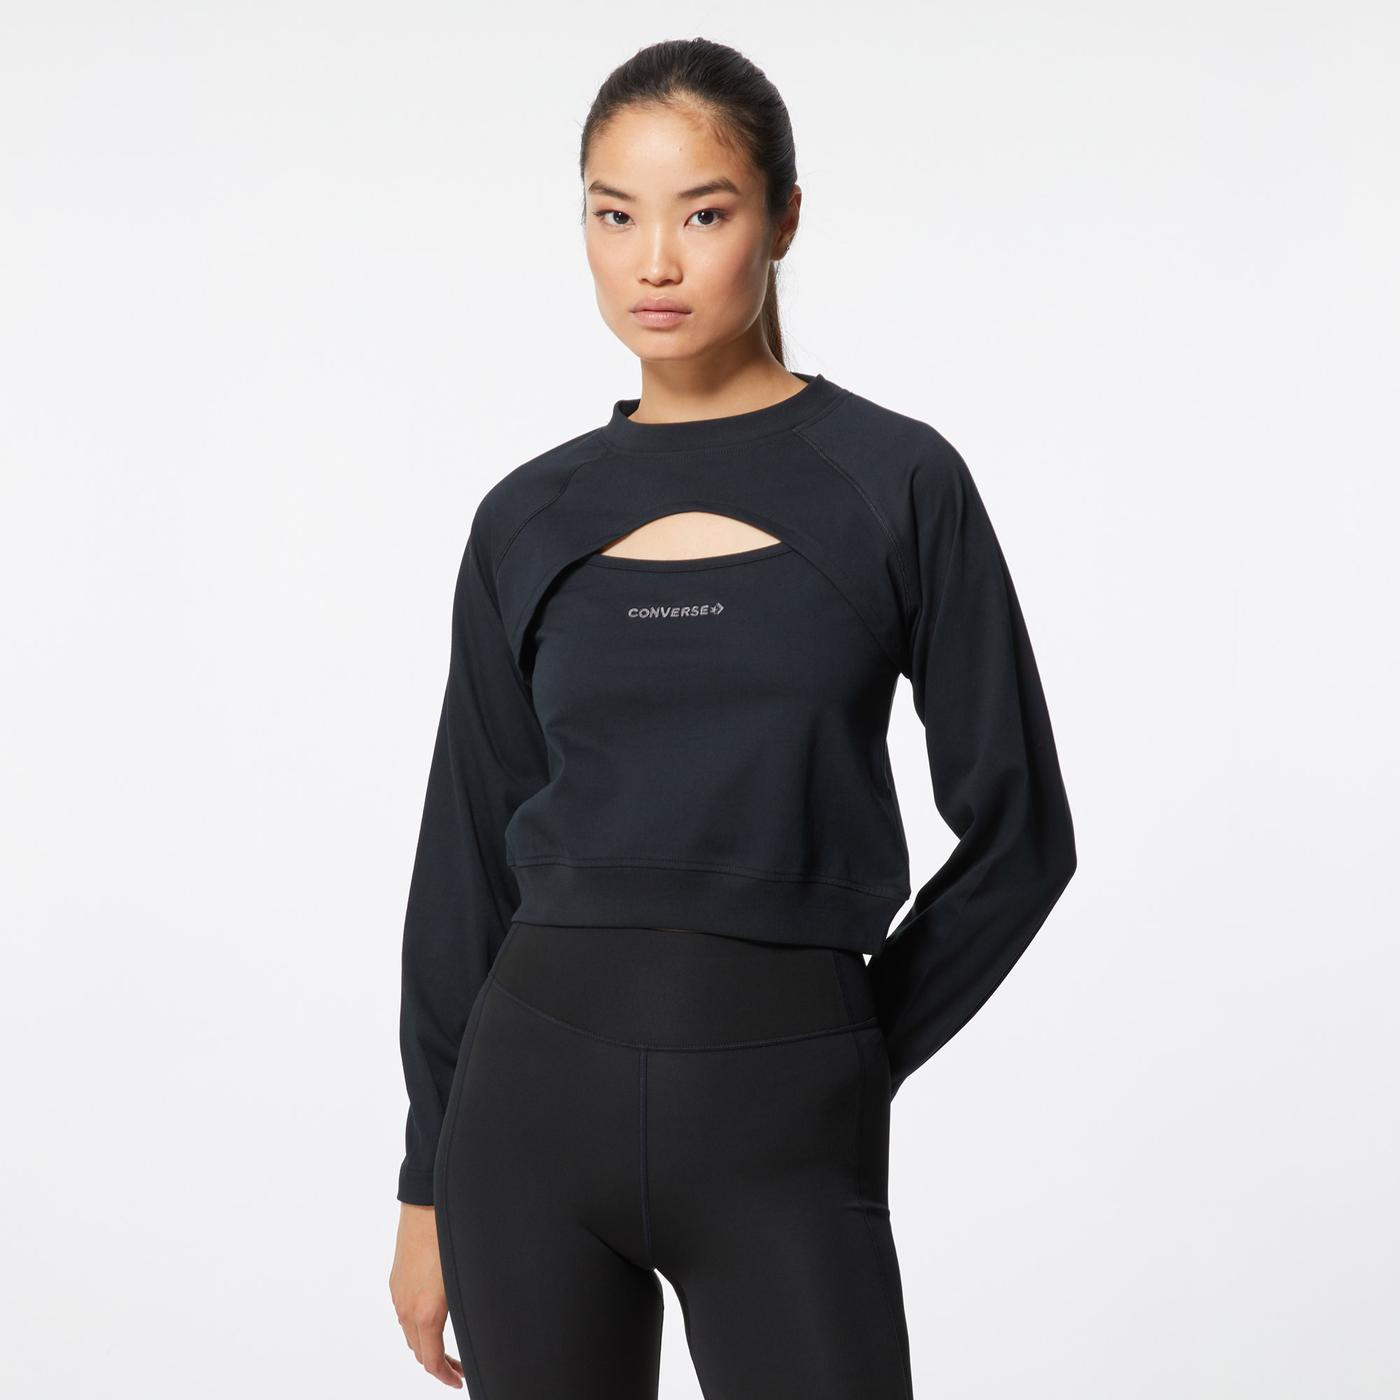 Converse Twisted Knits Cut Out Top Kadın Siyah Sweatshirt